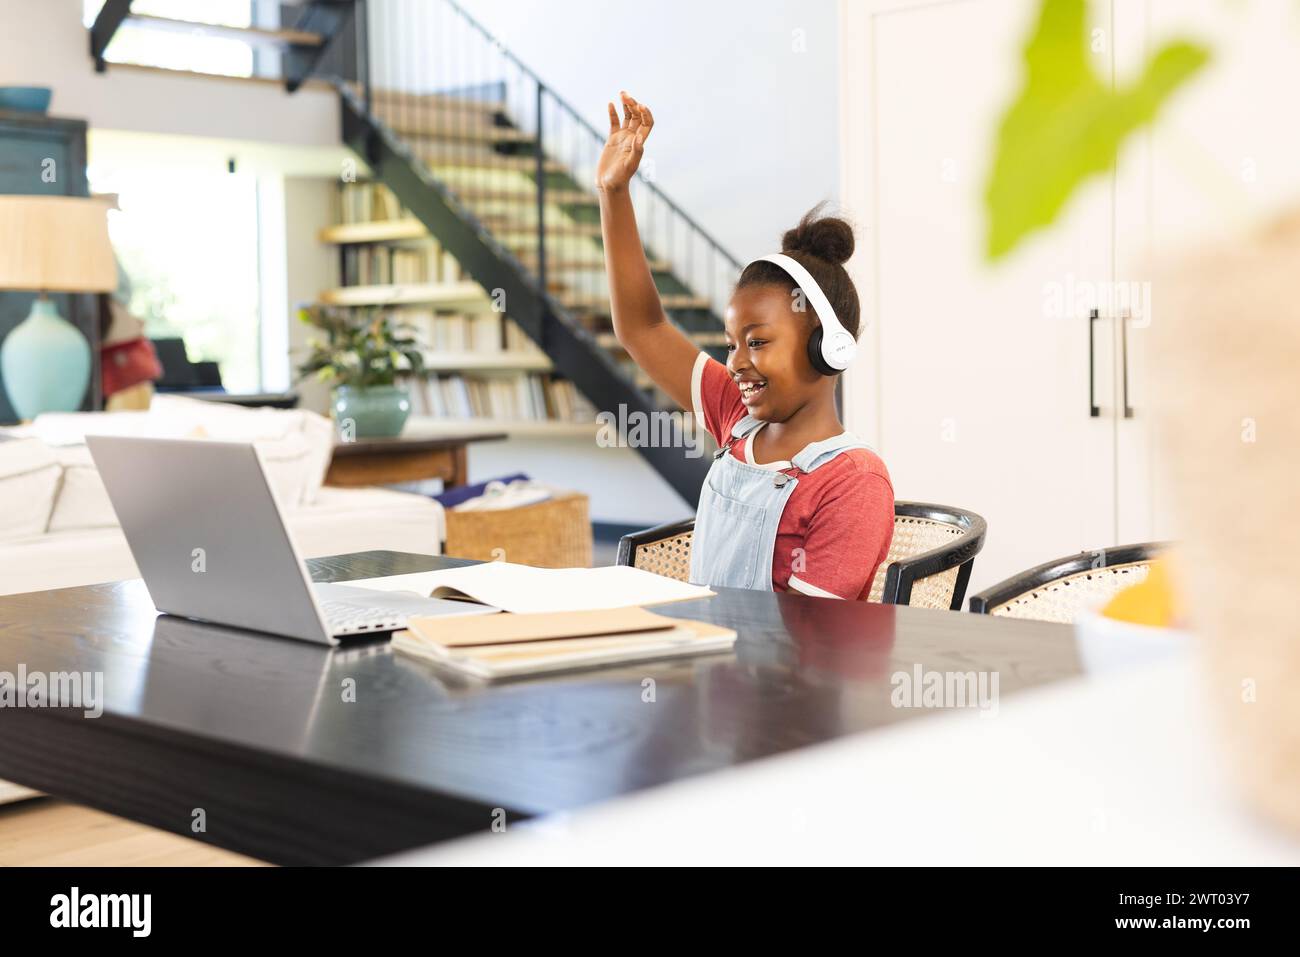 Ein junges afroamerikanisches Mädchen ist zu Hause an einer Online-Schulsitzung beteiligt Stockfoto